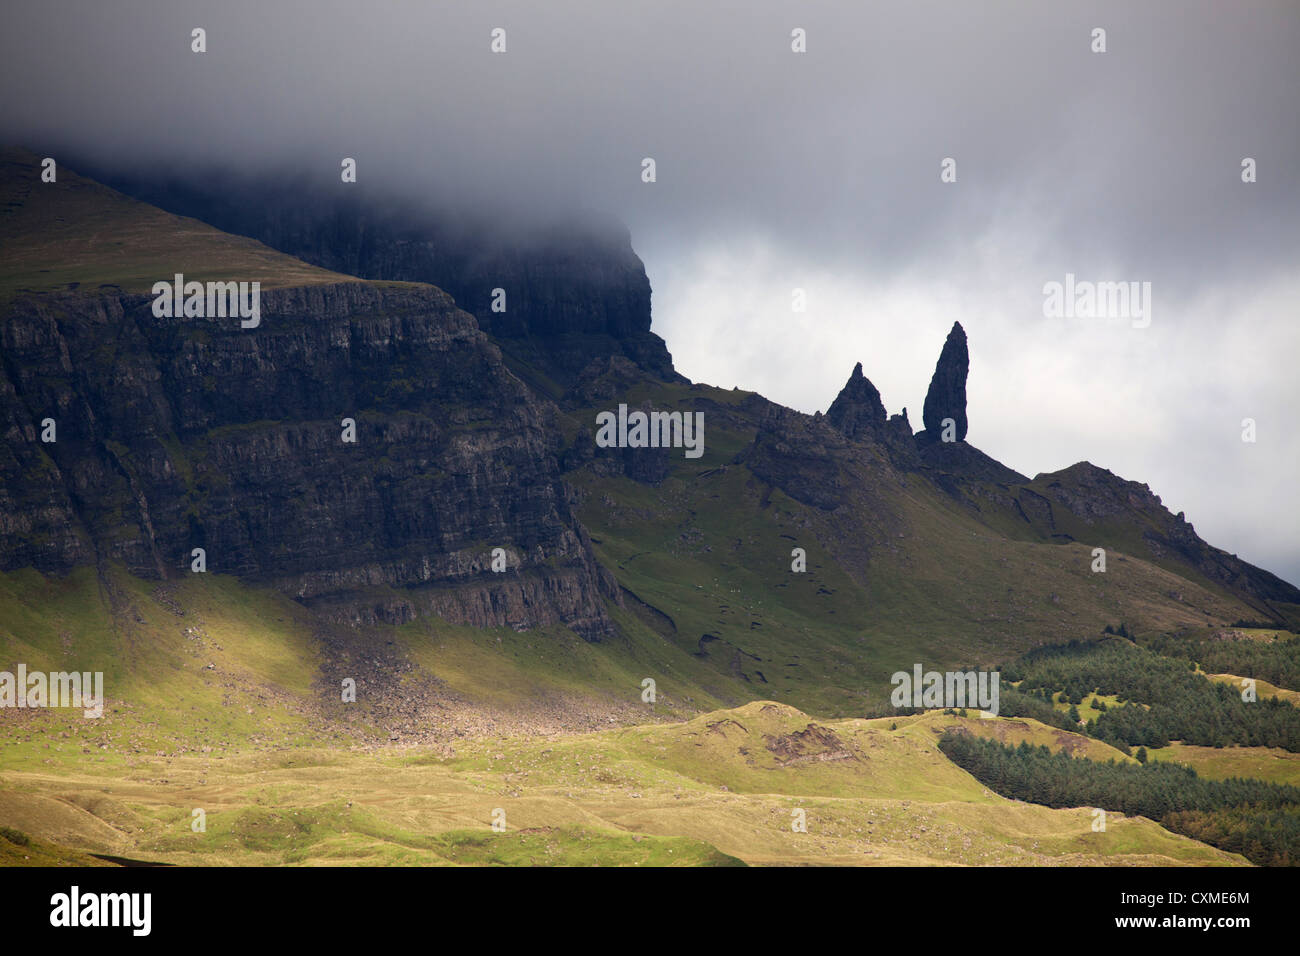 Isle Of Skye, Schottland. Dramatischen Blick auf die Storr-Hügel und der Old Man of Storr auf der nordöstlichen Küste der Insel Skye. Stockfoto